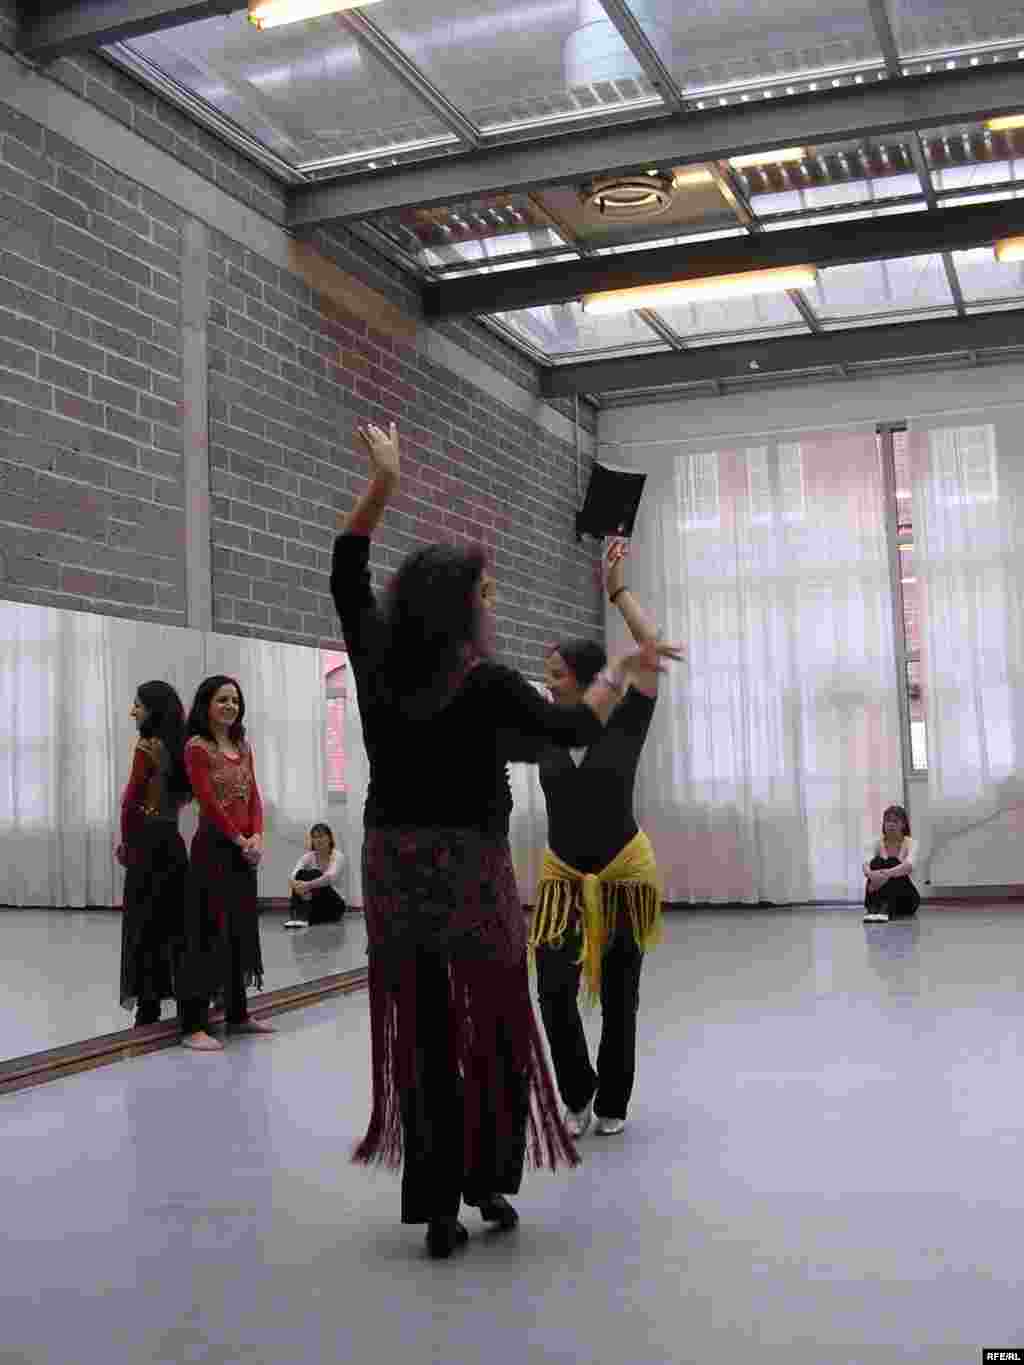 علاقمندان به رقص کلاسیک ایرانی در کارگاه آموزش رقص در حال تمرین و نمایش آنچه که در این کارگاه آموخته اند در مقابل مربی خود – دوسلدورف